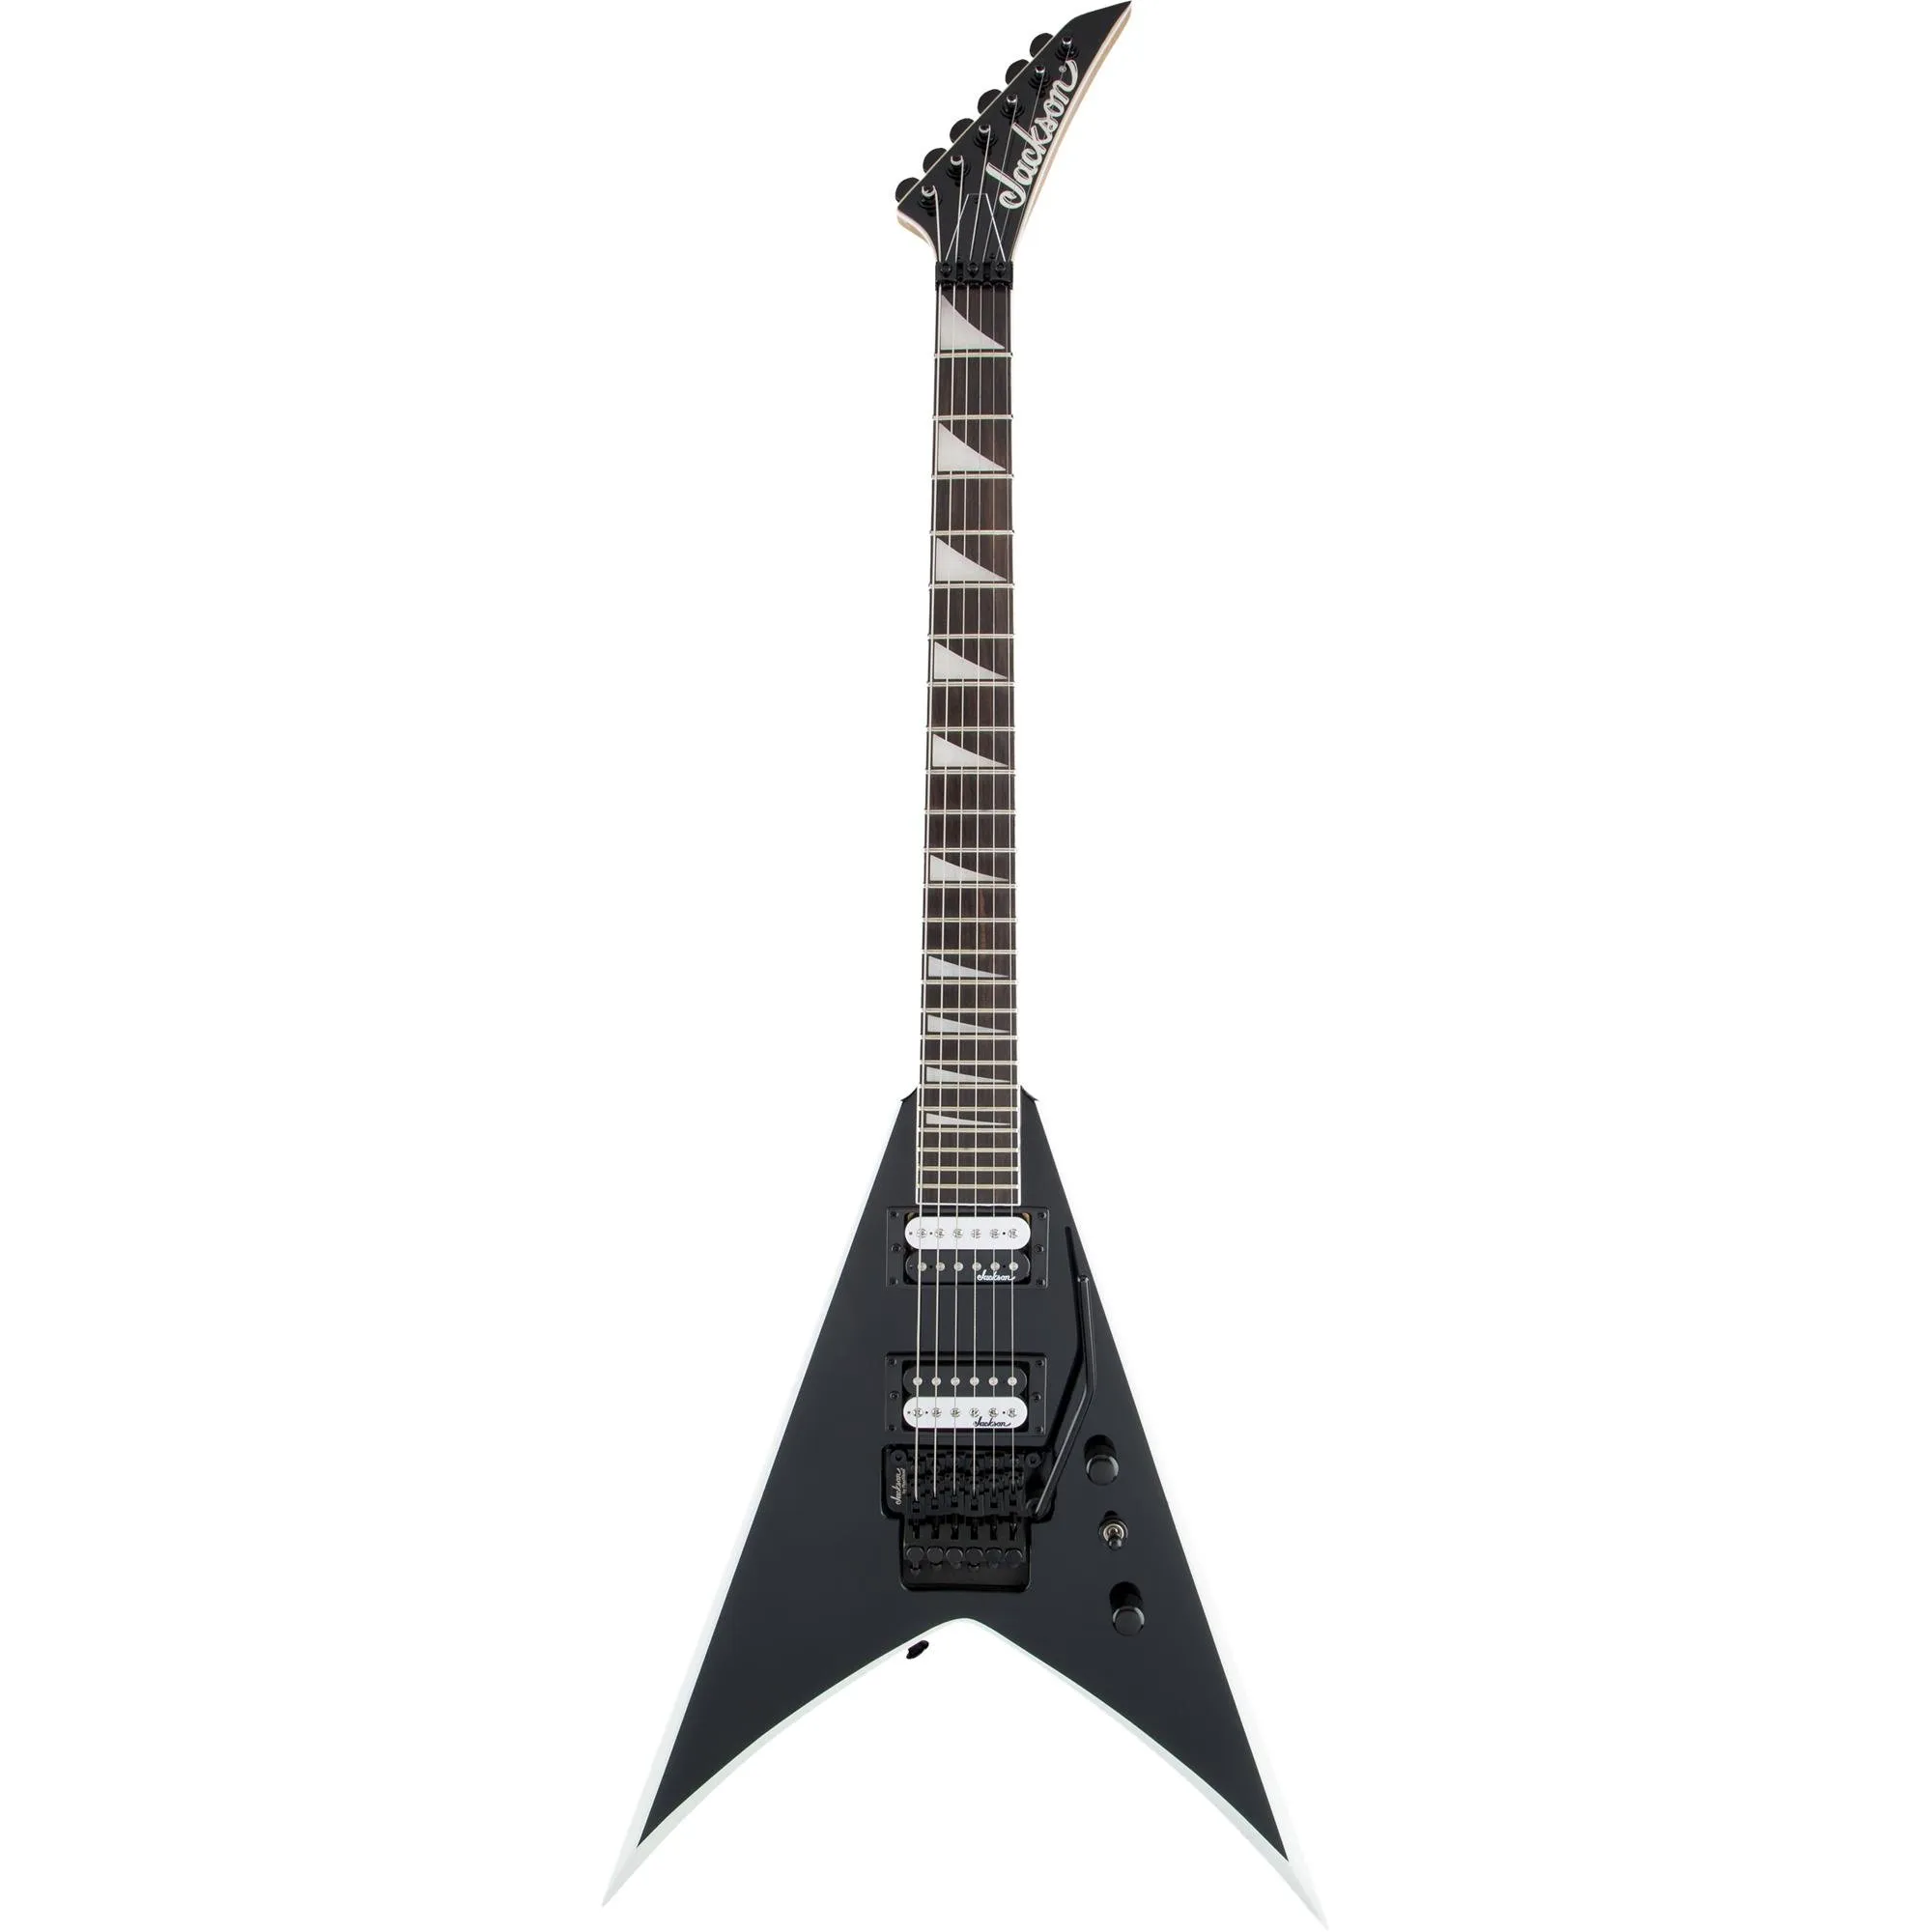 Guitarra Jackson King V JS32 Js Series Black with White Bevels por 4.357,99 à vista no boleto/pix ou parcele em até 12x sem juros. Compre na loja Mundomax!